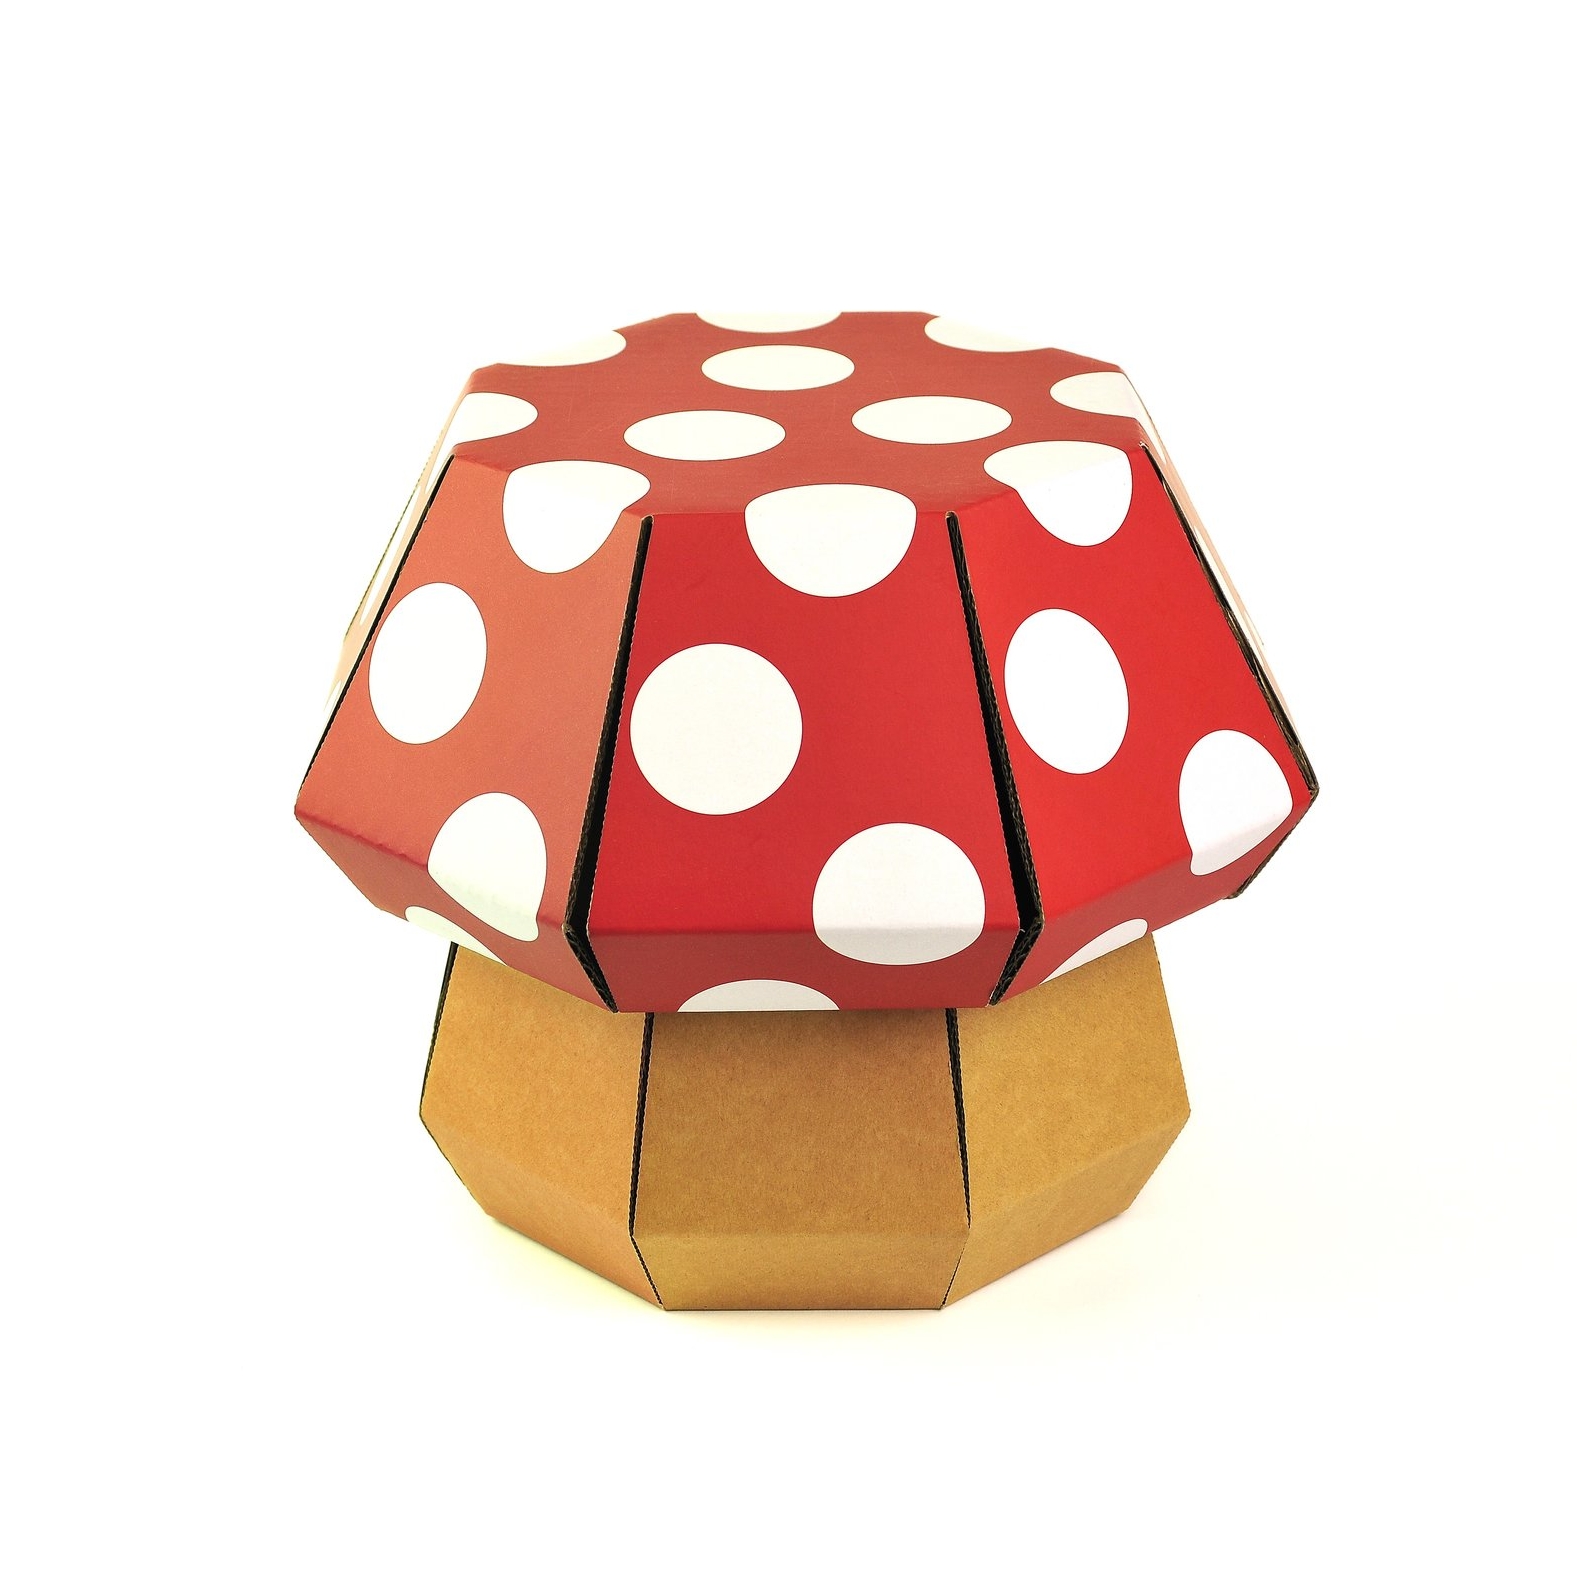 Mushroom Red White.jpg